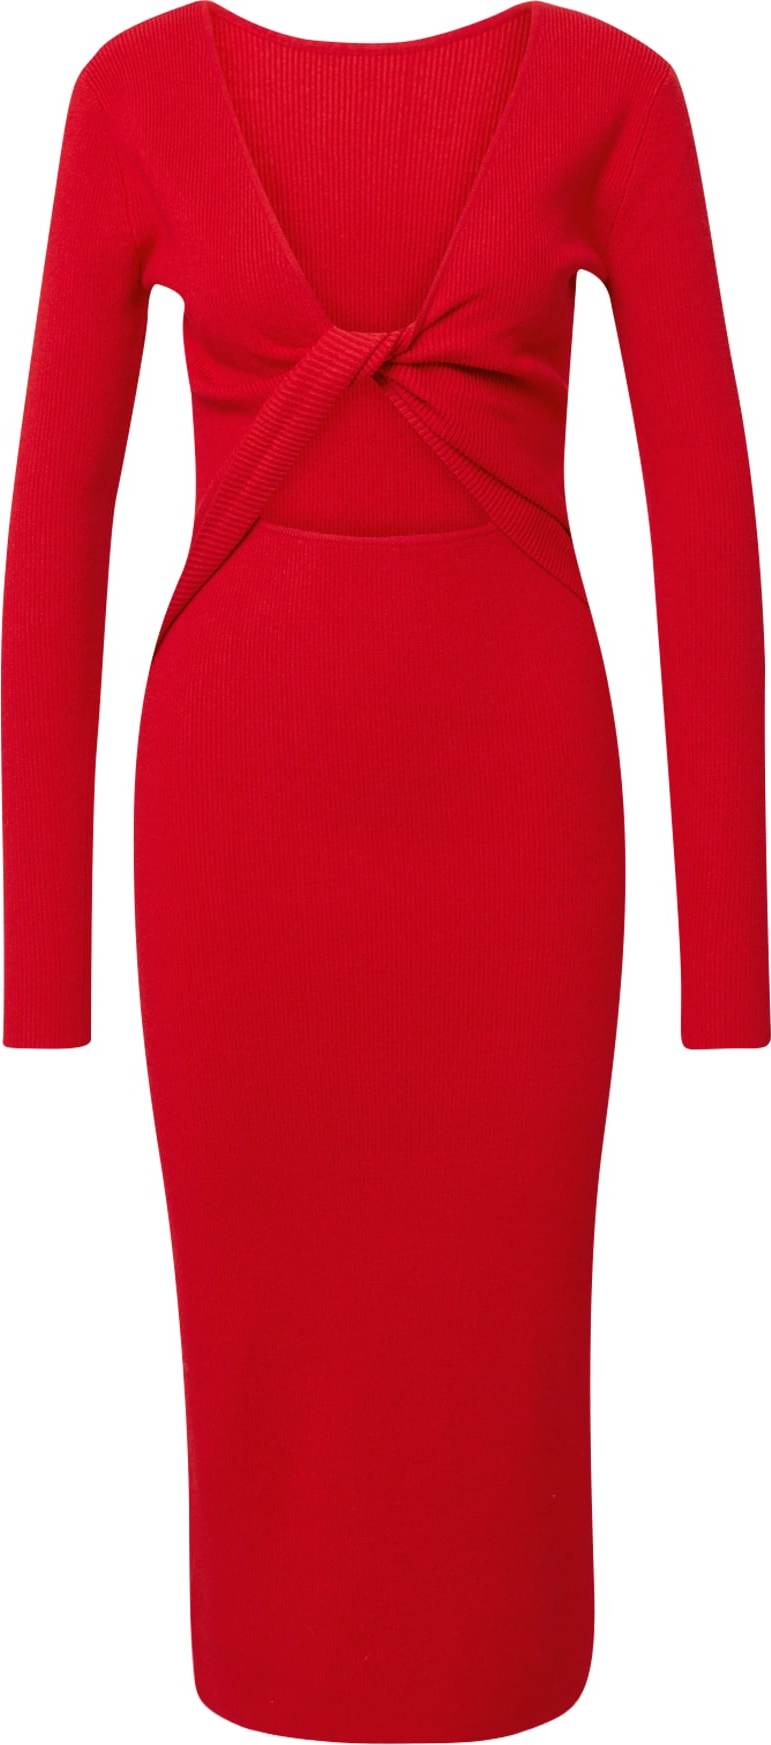 Úpletové šaty 'Lela Jenner' BZR červená